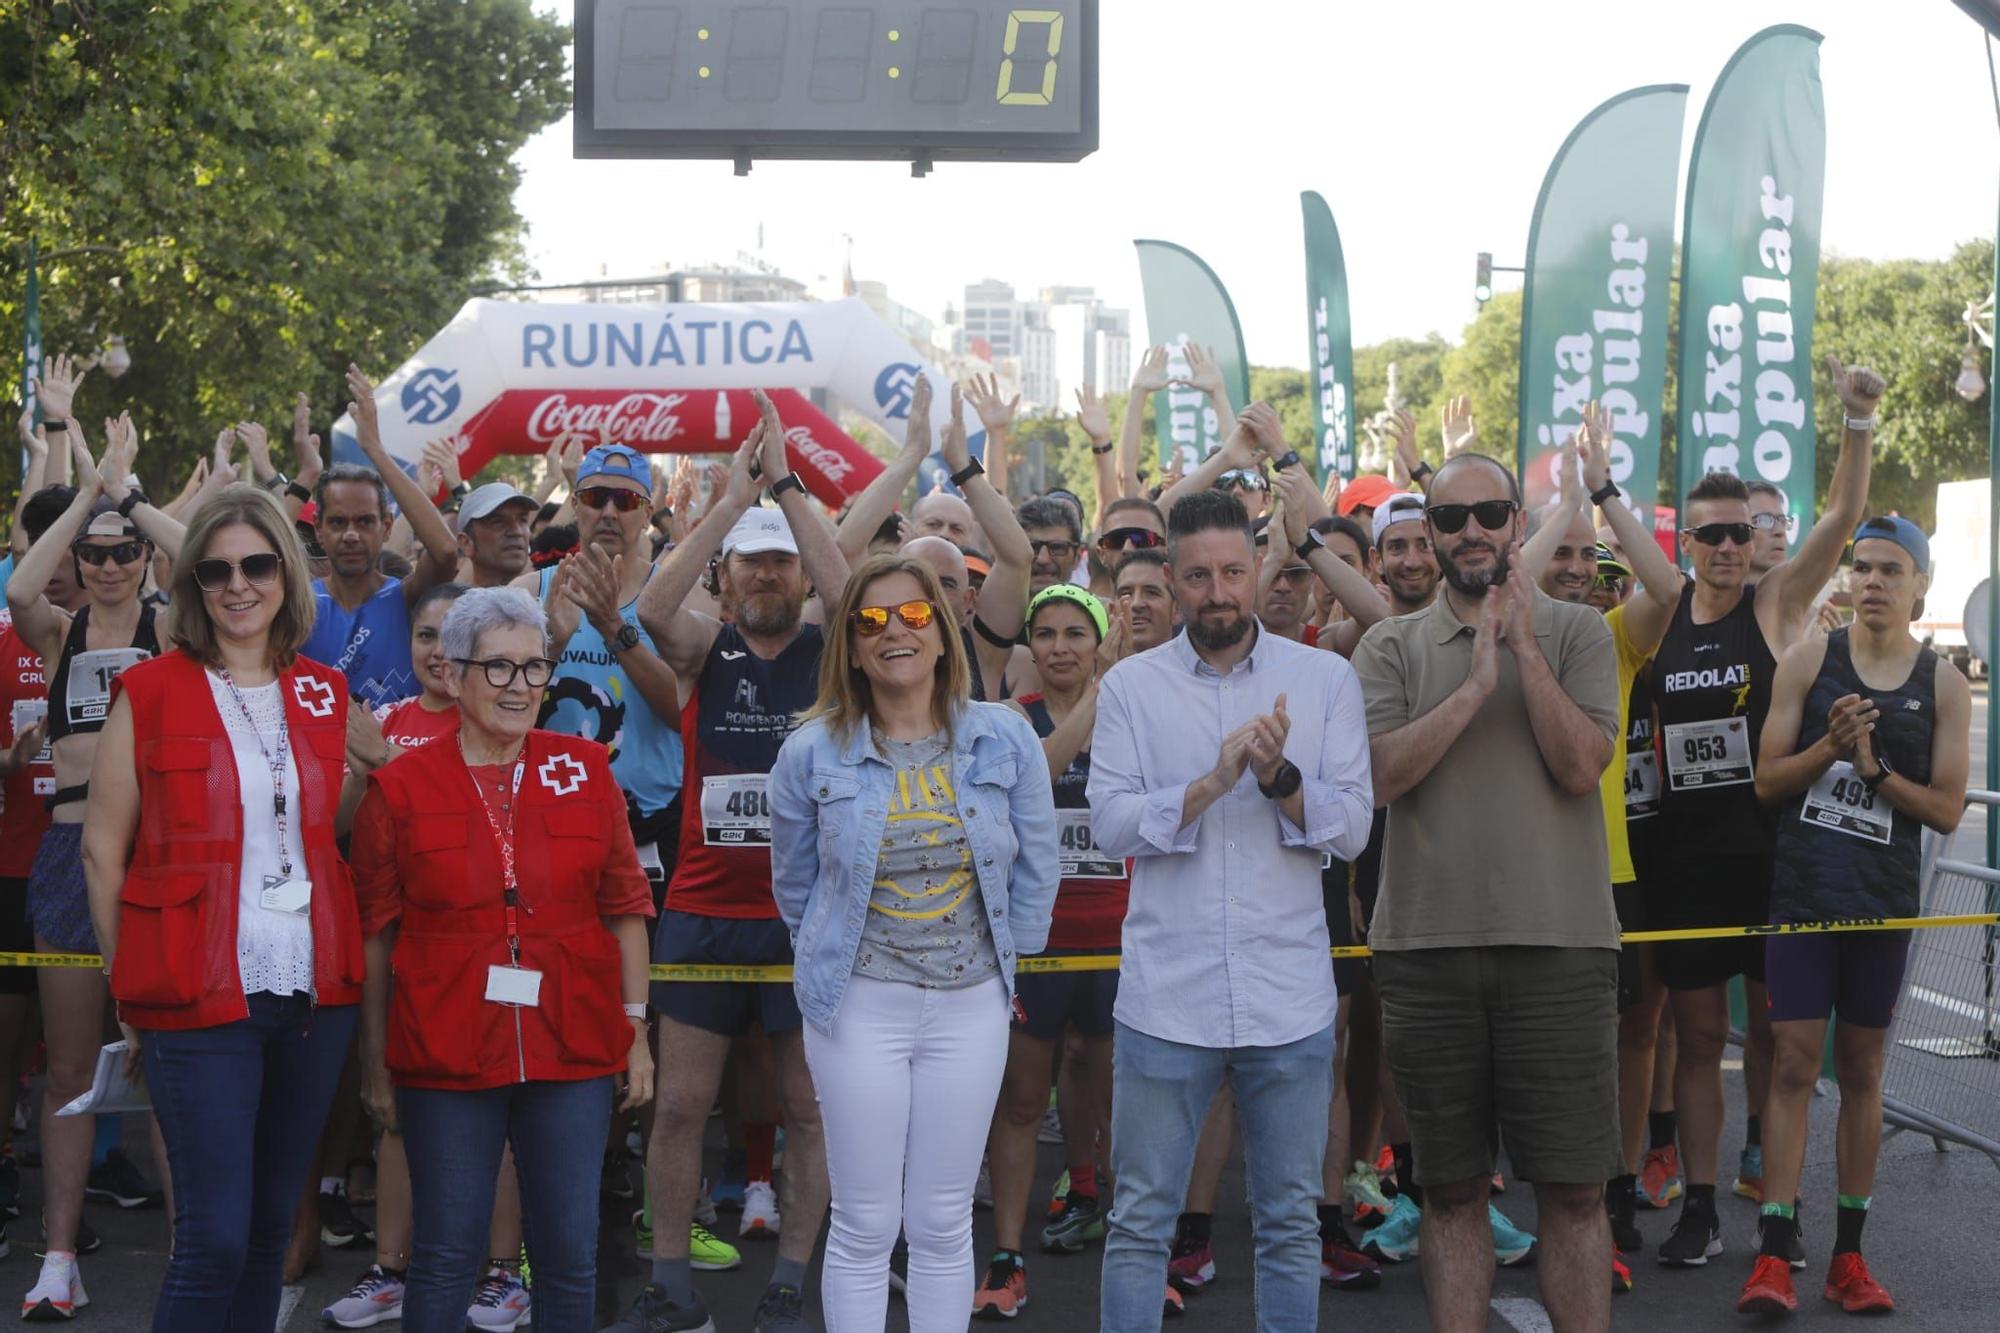 Miles de corredores en IX Carrera de Cruz Roja en València